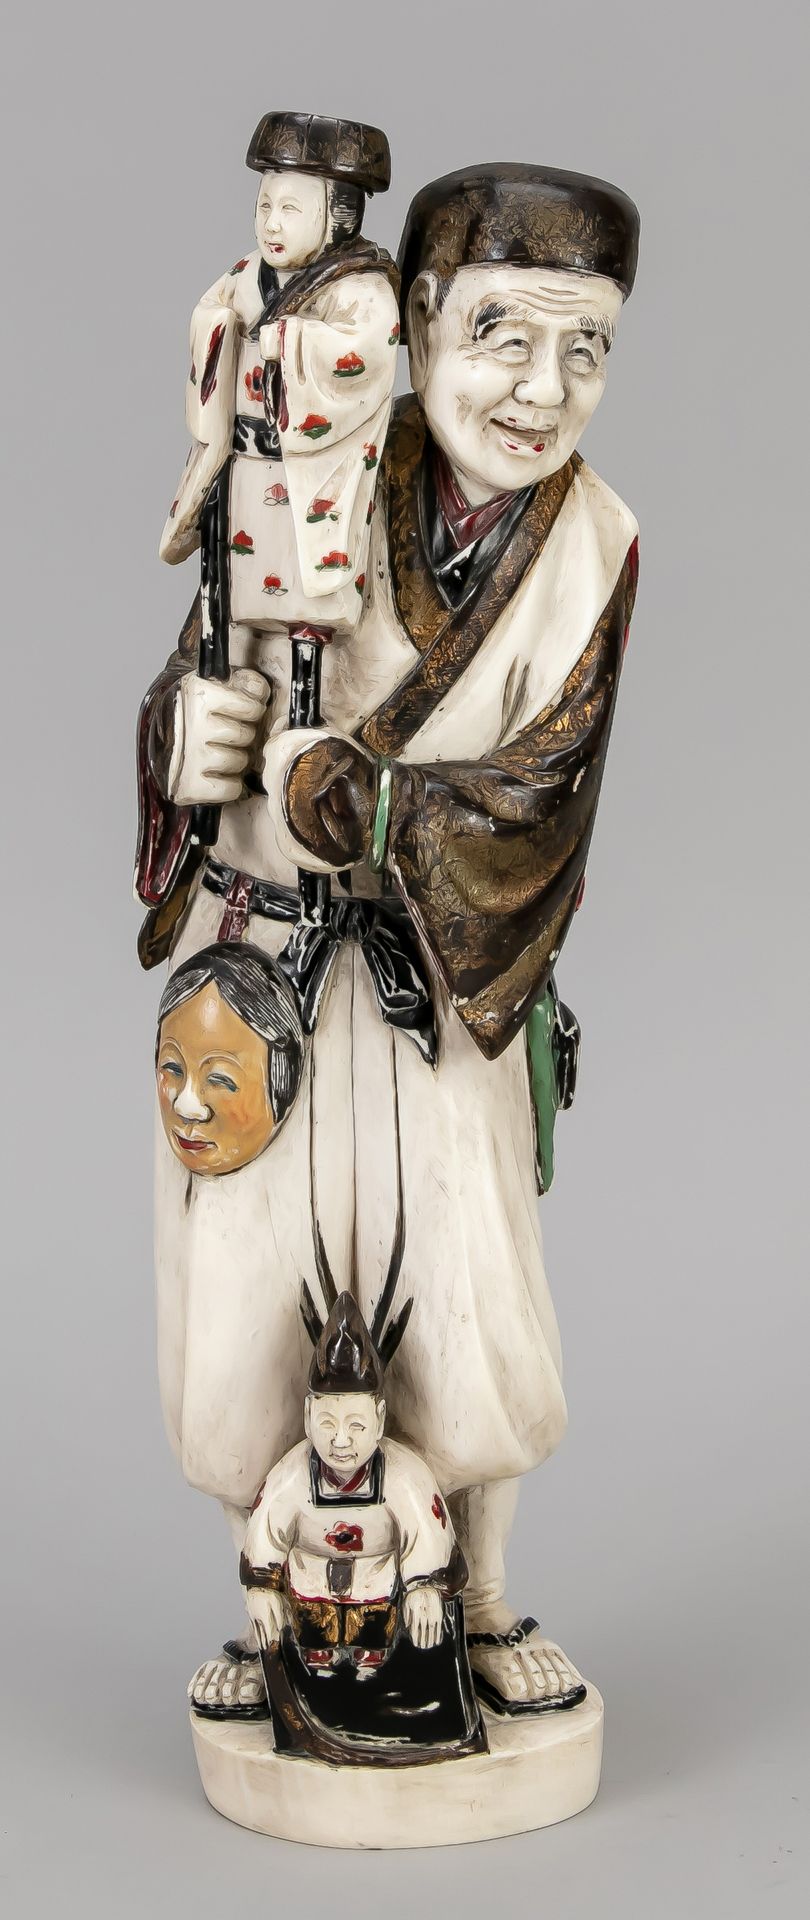 Null 象牙雕像/和服，日本，19世纪末（明治）。拿着棍子木偶的人，腰上挂着一个没有戏剧性的面具。部分多色漆，局部为金色。底座下的木刻签名，高34厘米。